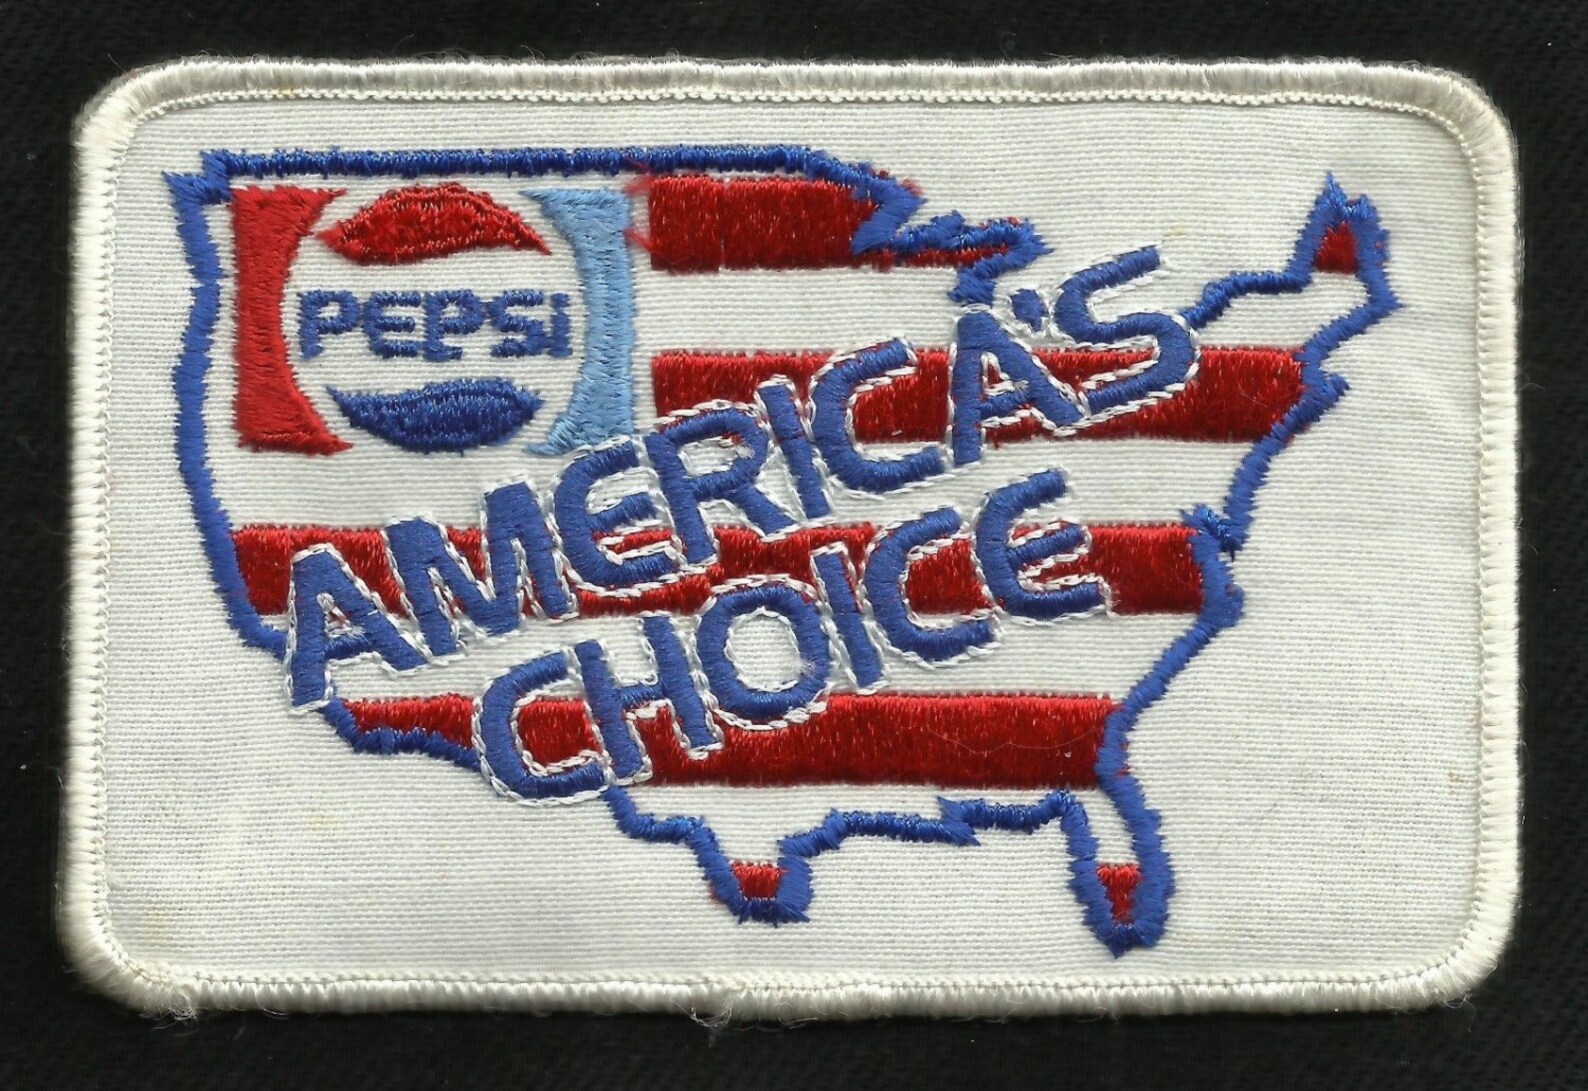 Pepsi America.